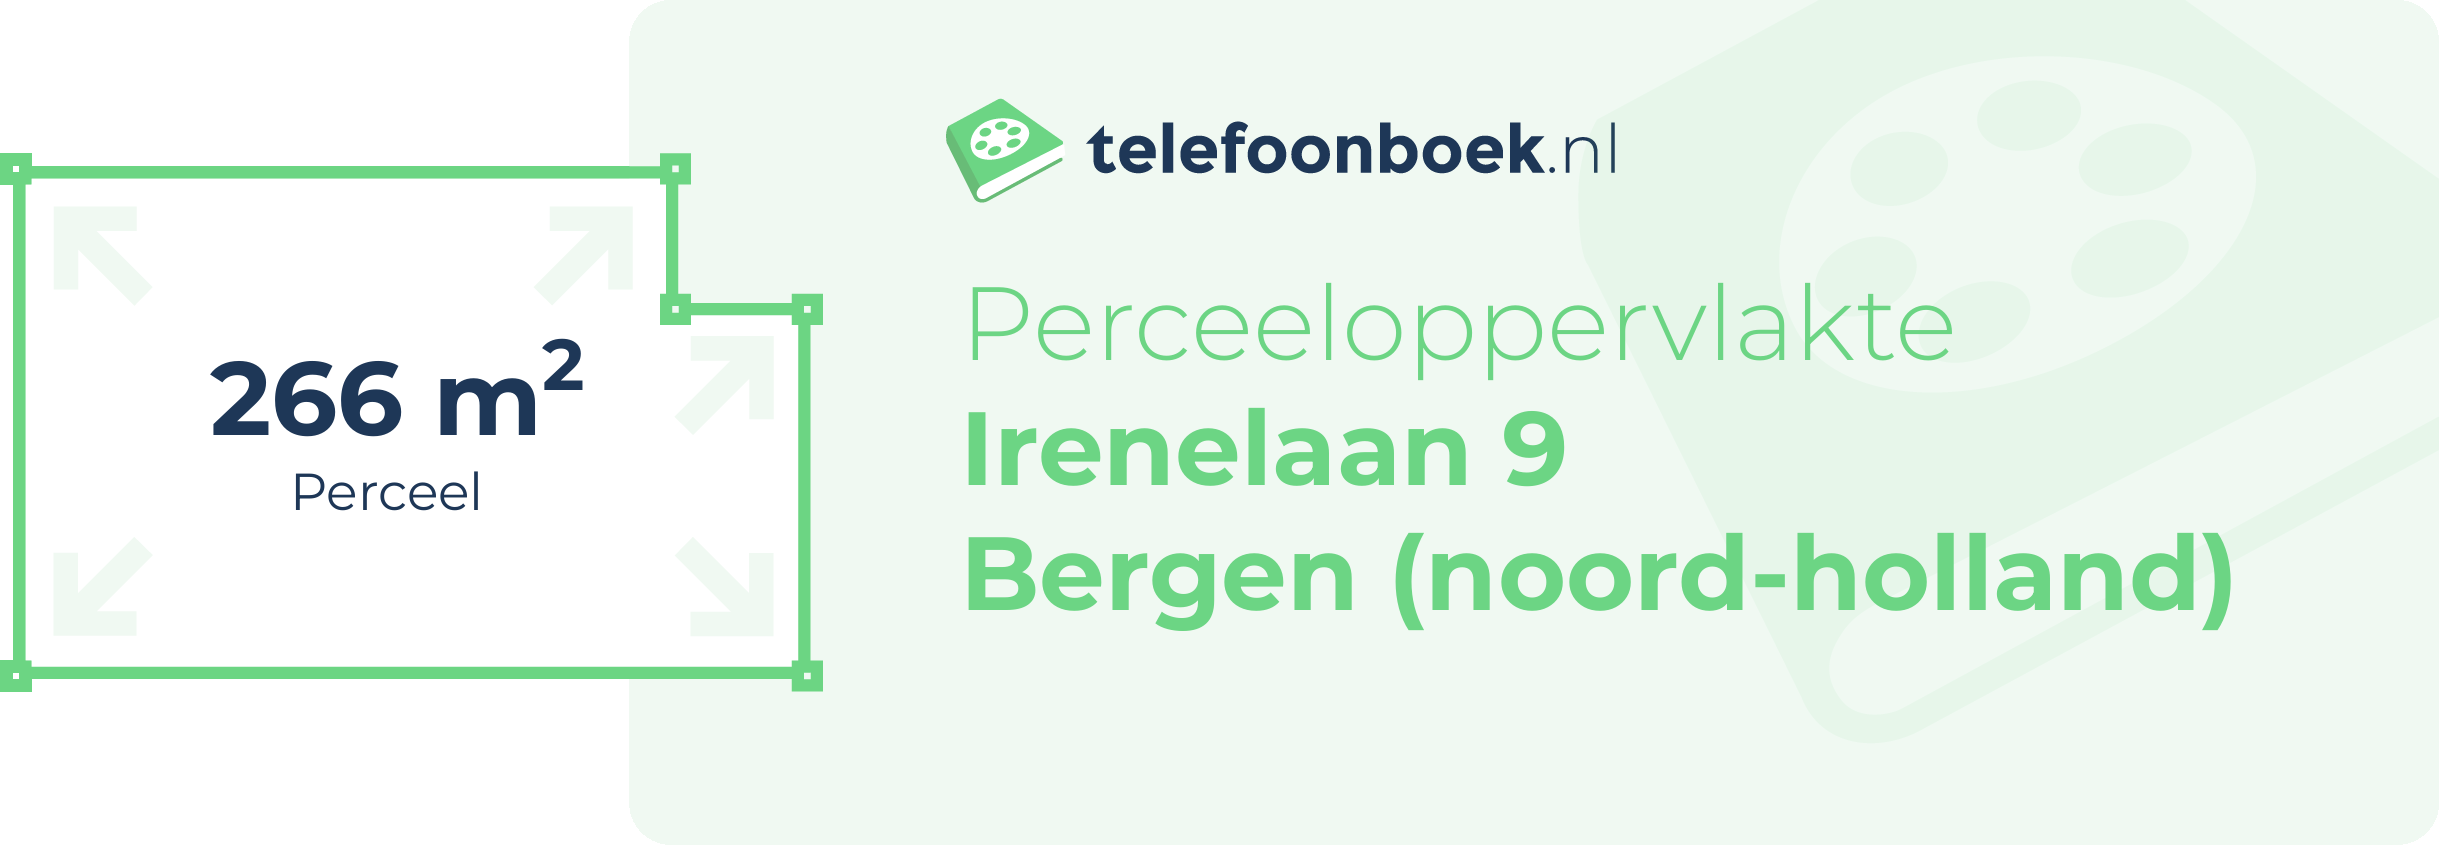 Perceeloppervlakte Irenelaan 9 Bergen (Noord-Holland)